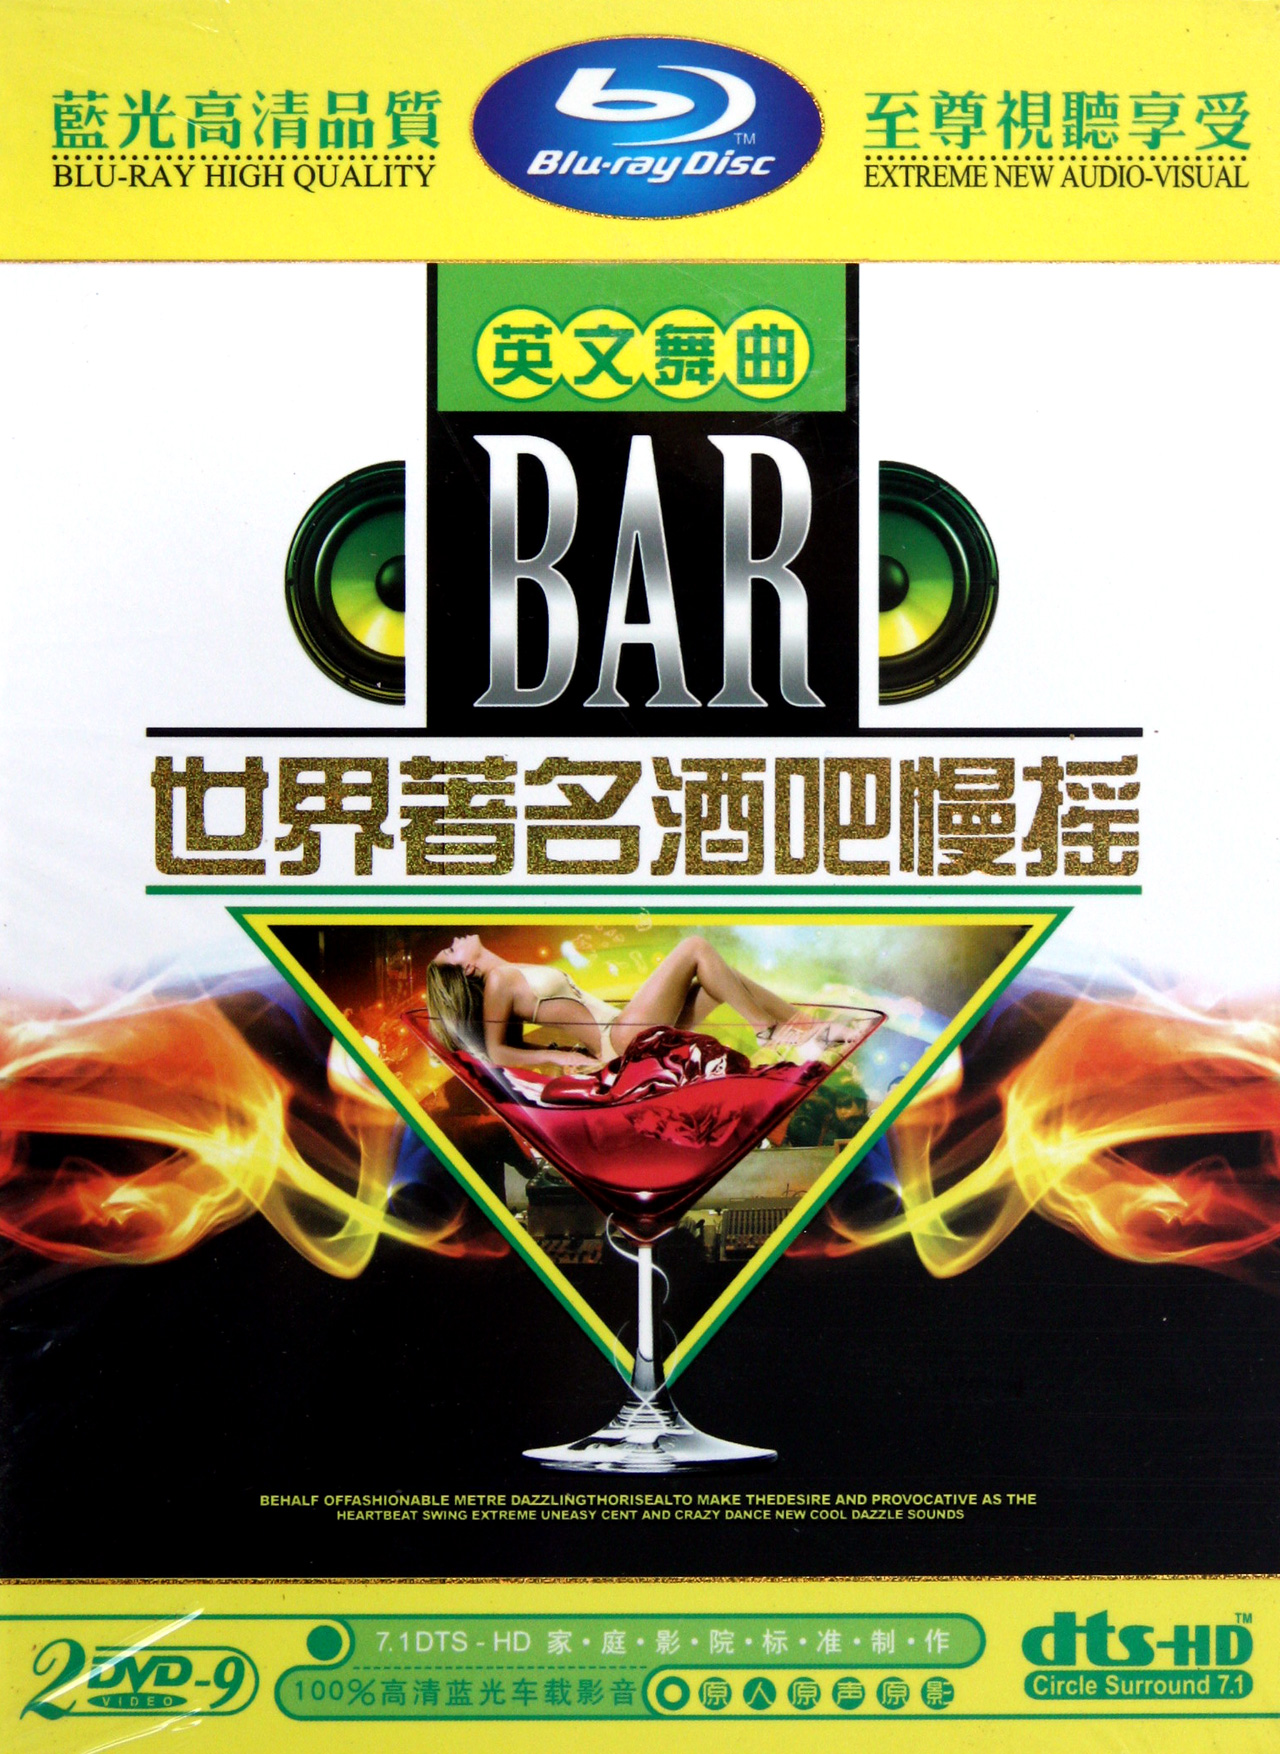 DVD-9世界著名酒吧慢摇英文舞曲(2碟装)